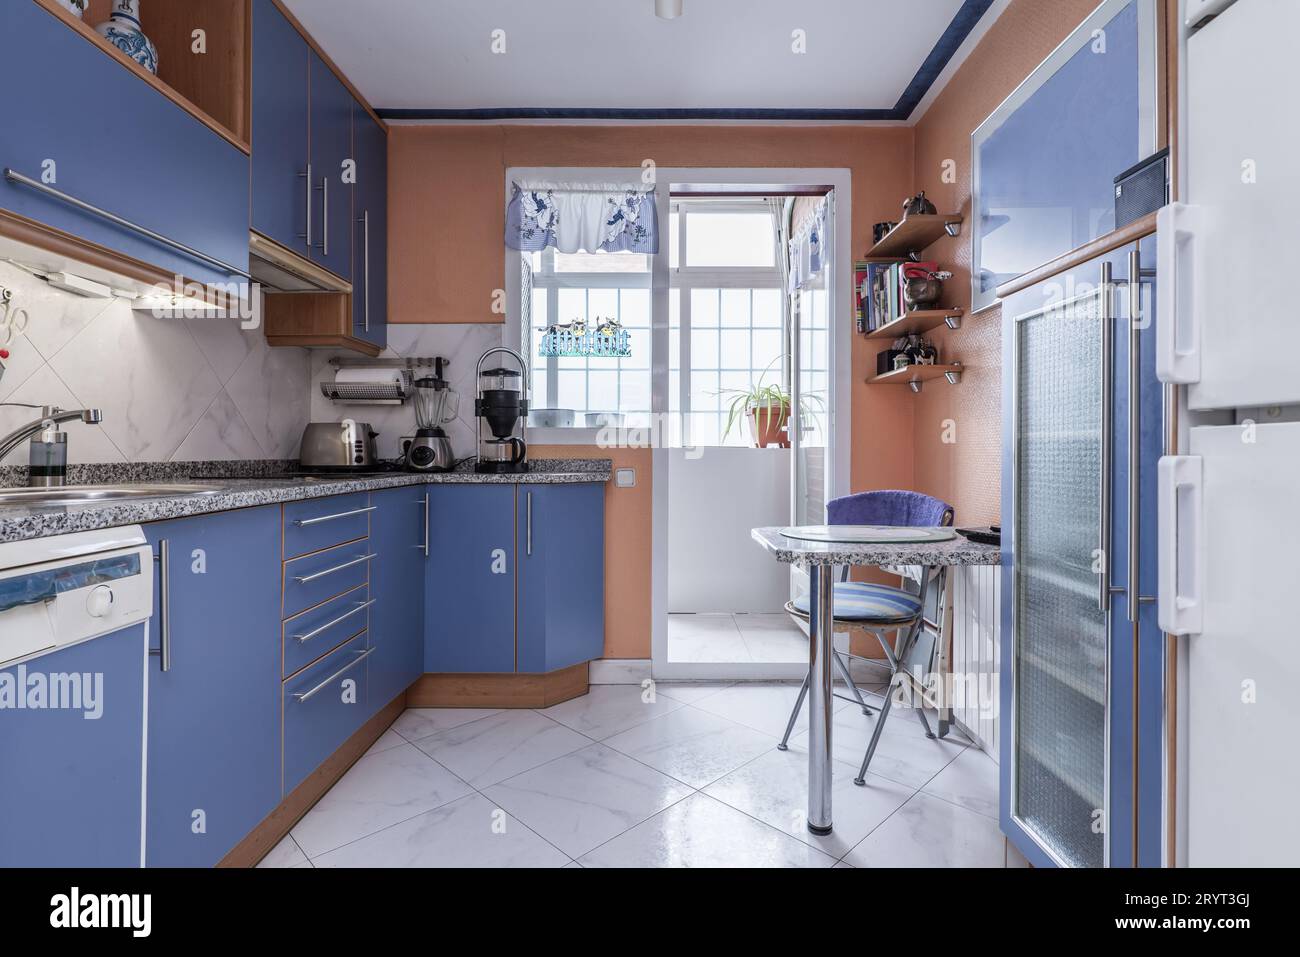 Cucina con parete piena di armadietti blu con dettagli in legno di ciliegio Foto Stock